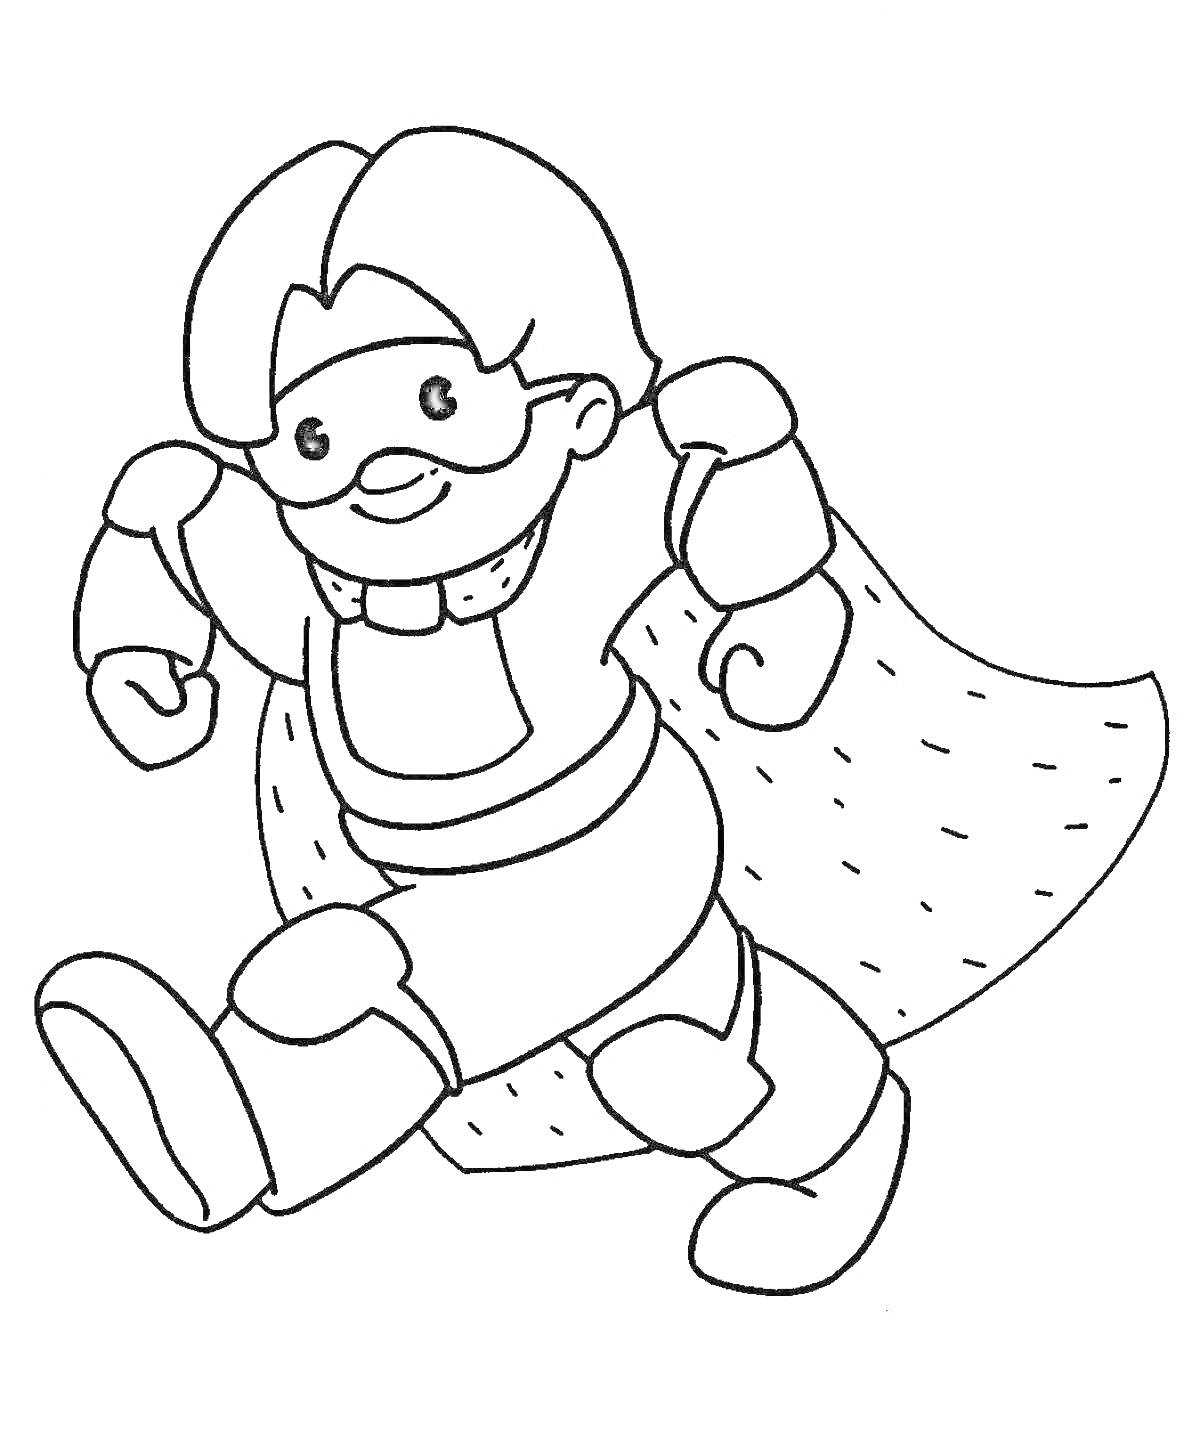 мальчик в новогоднем костюме супергероя с плащом, очками и ремнем